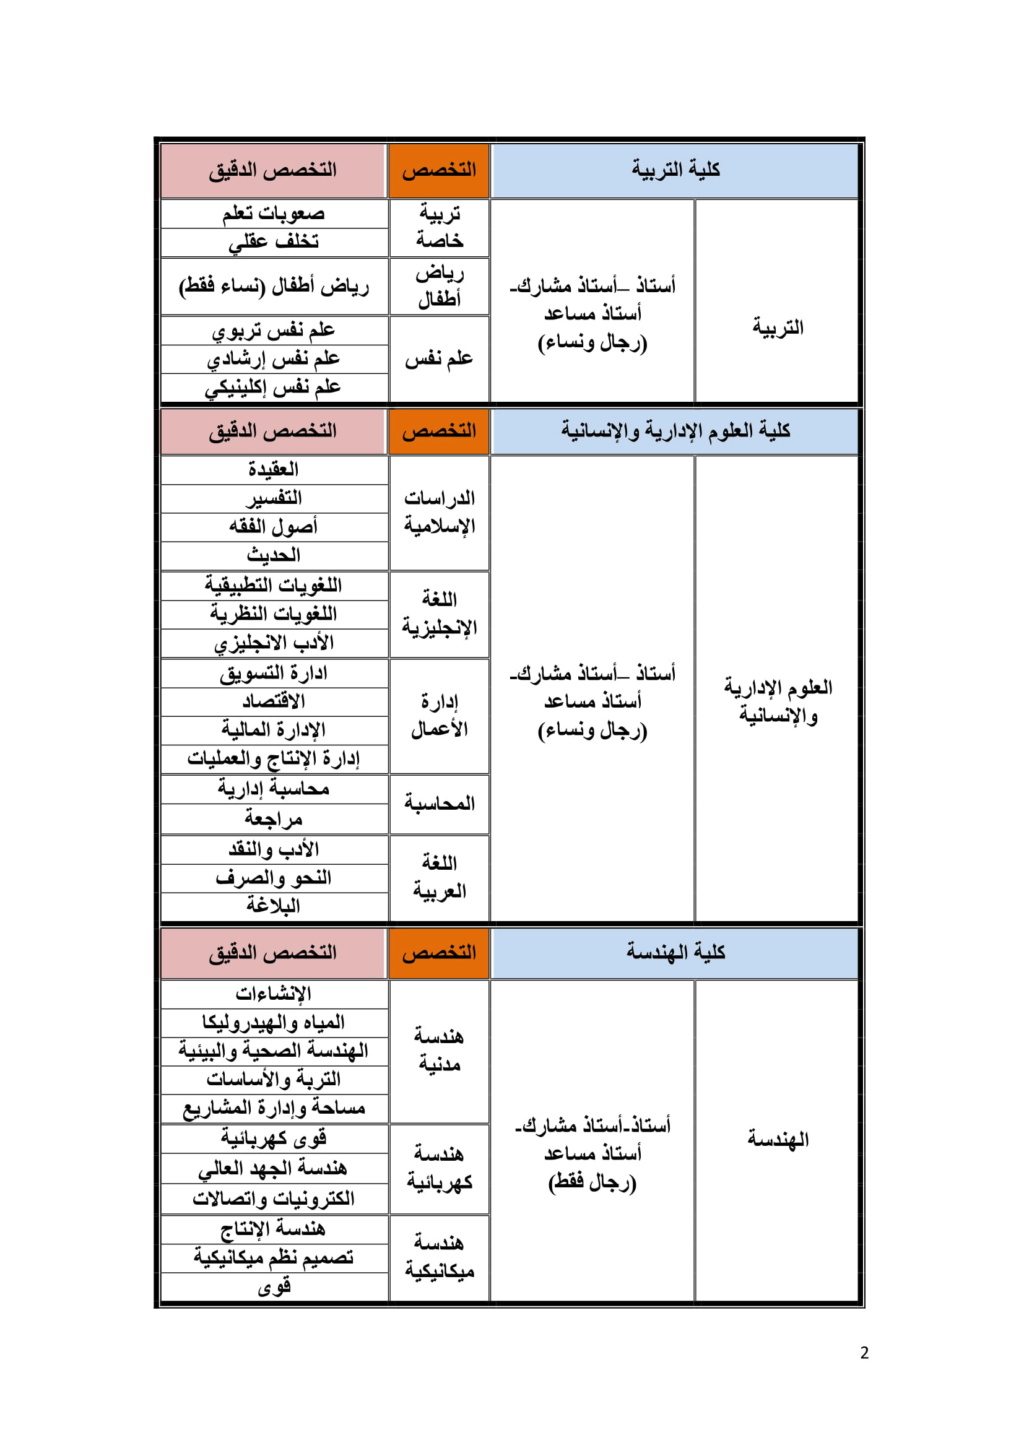 الجوف - جامعة الجوف : وظائف أكاديمية للسعوديين جديدة 239